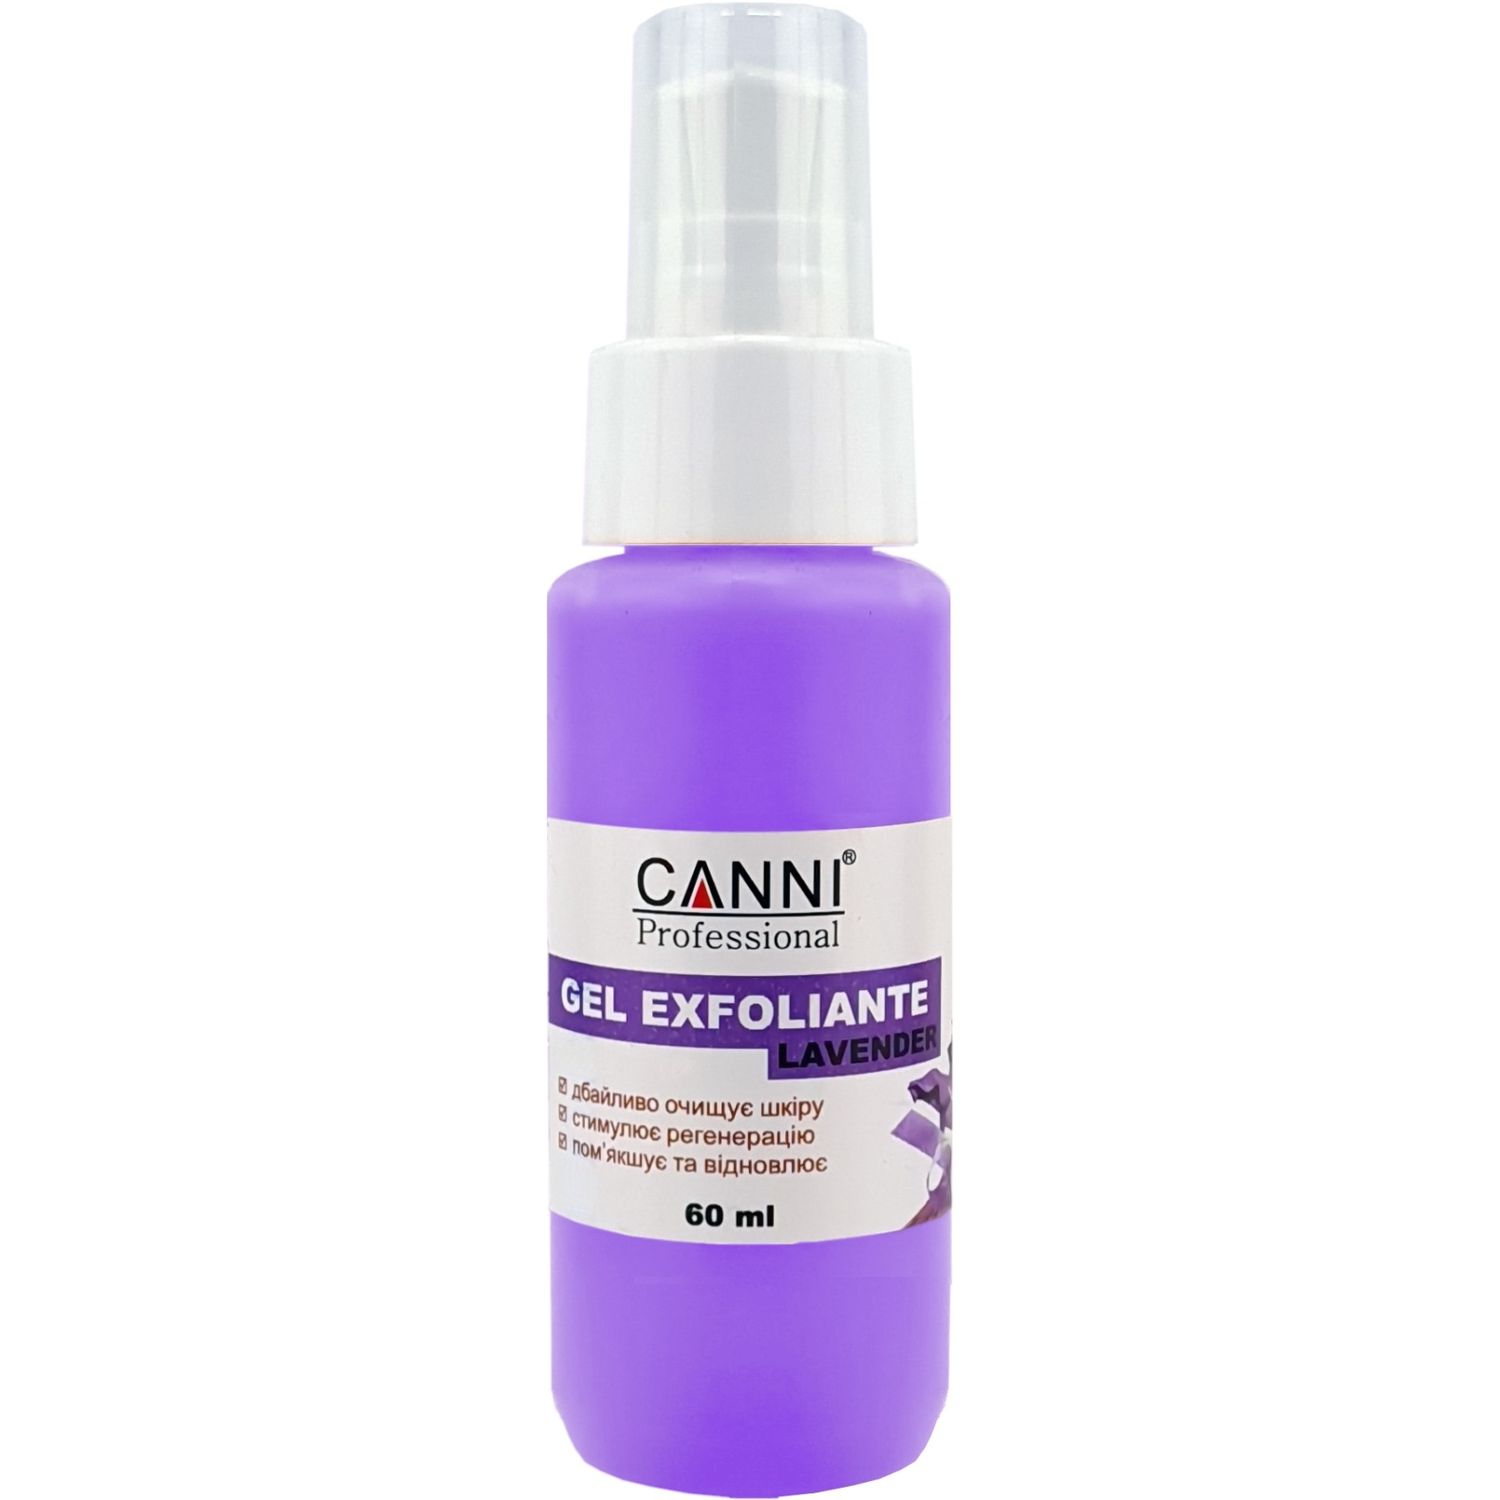 Гель-эксфолиант для рук Canni Gel Exfoliant Lavender 60 мл - фото 1